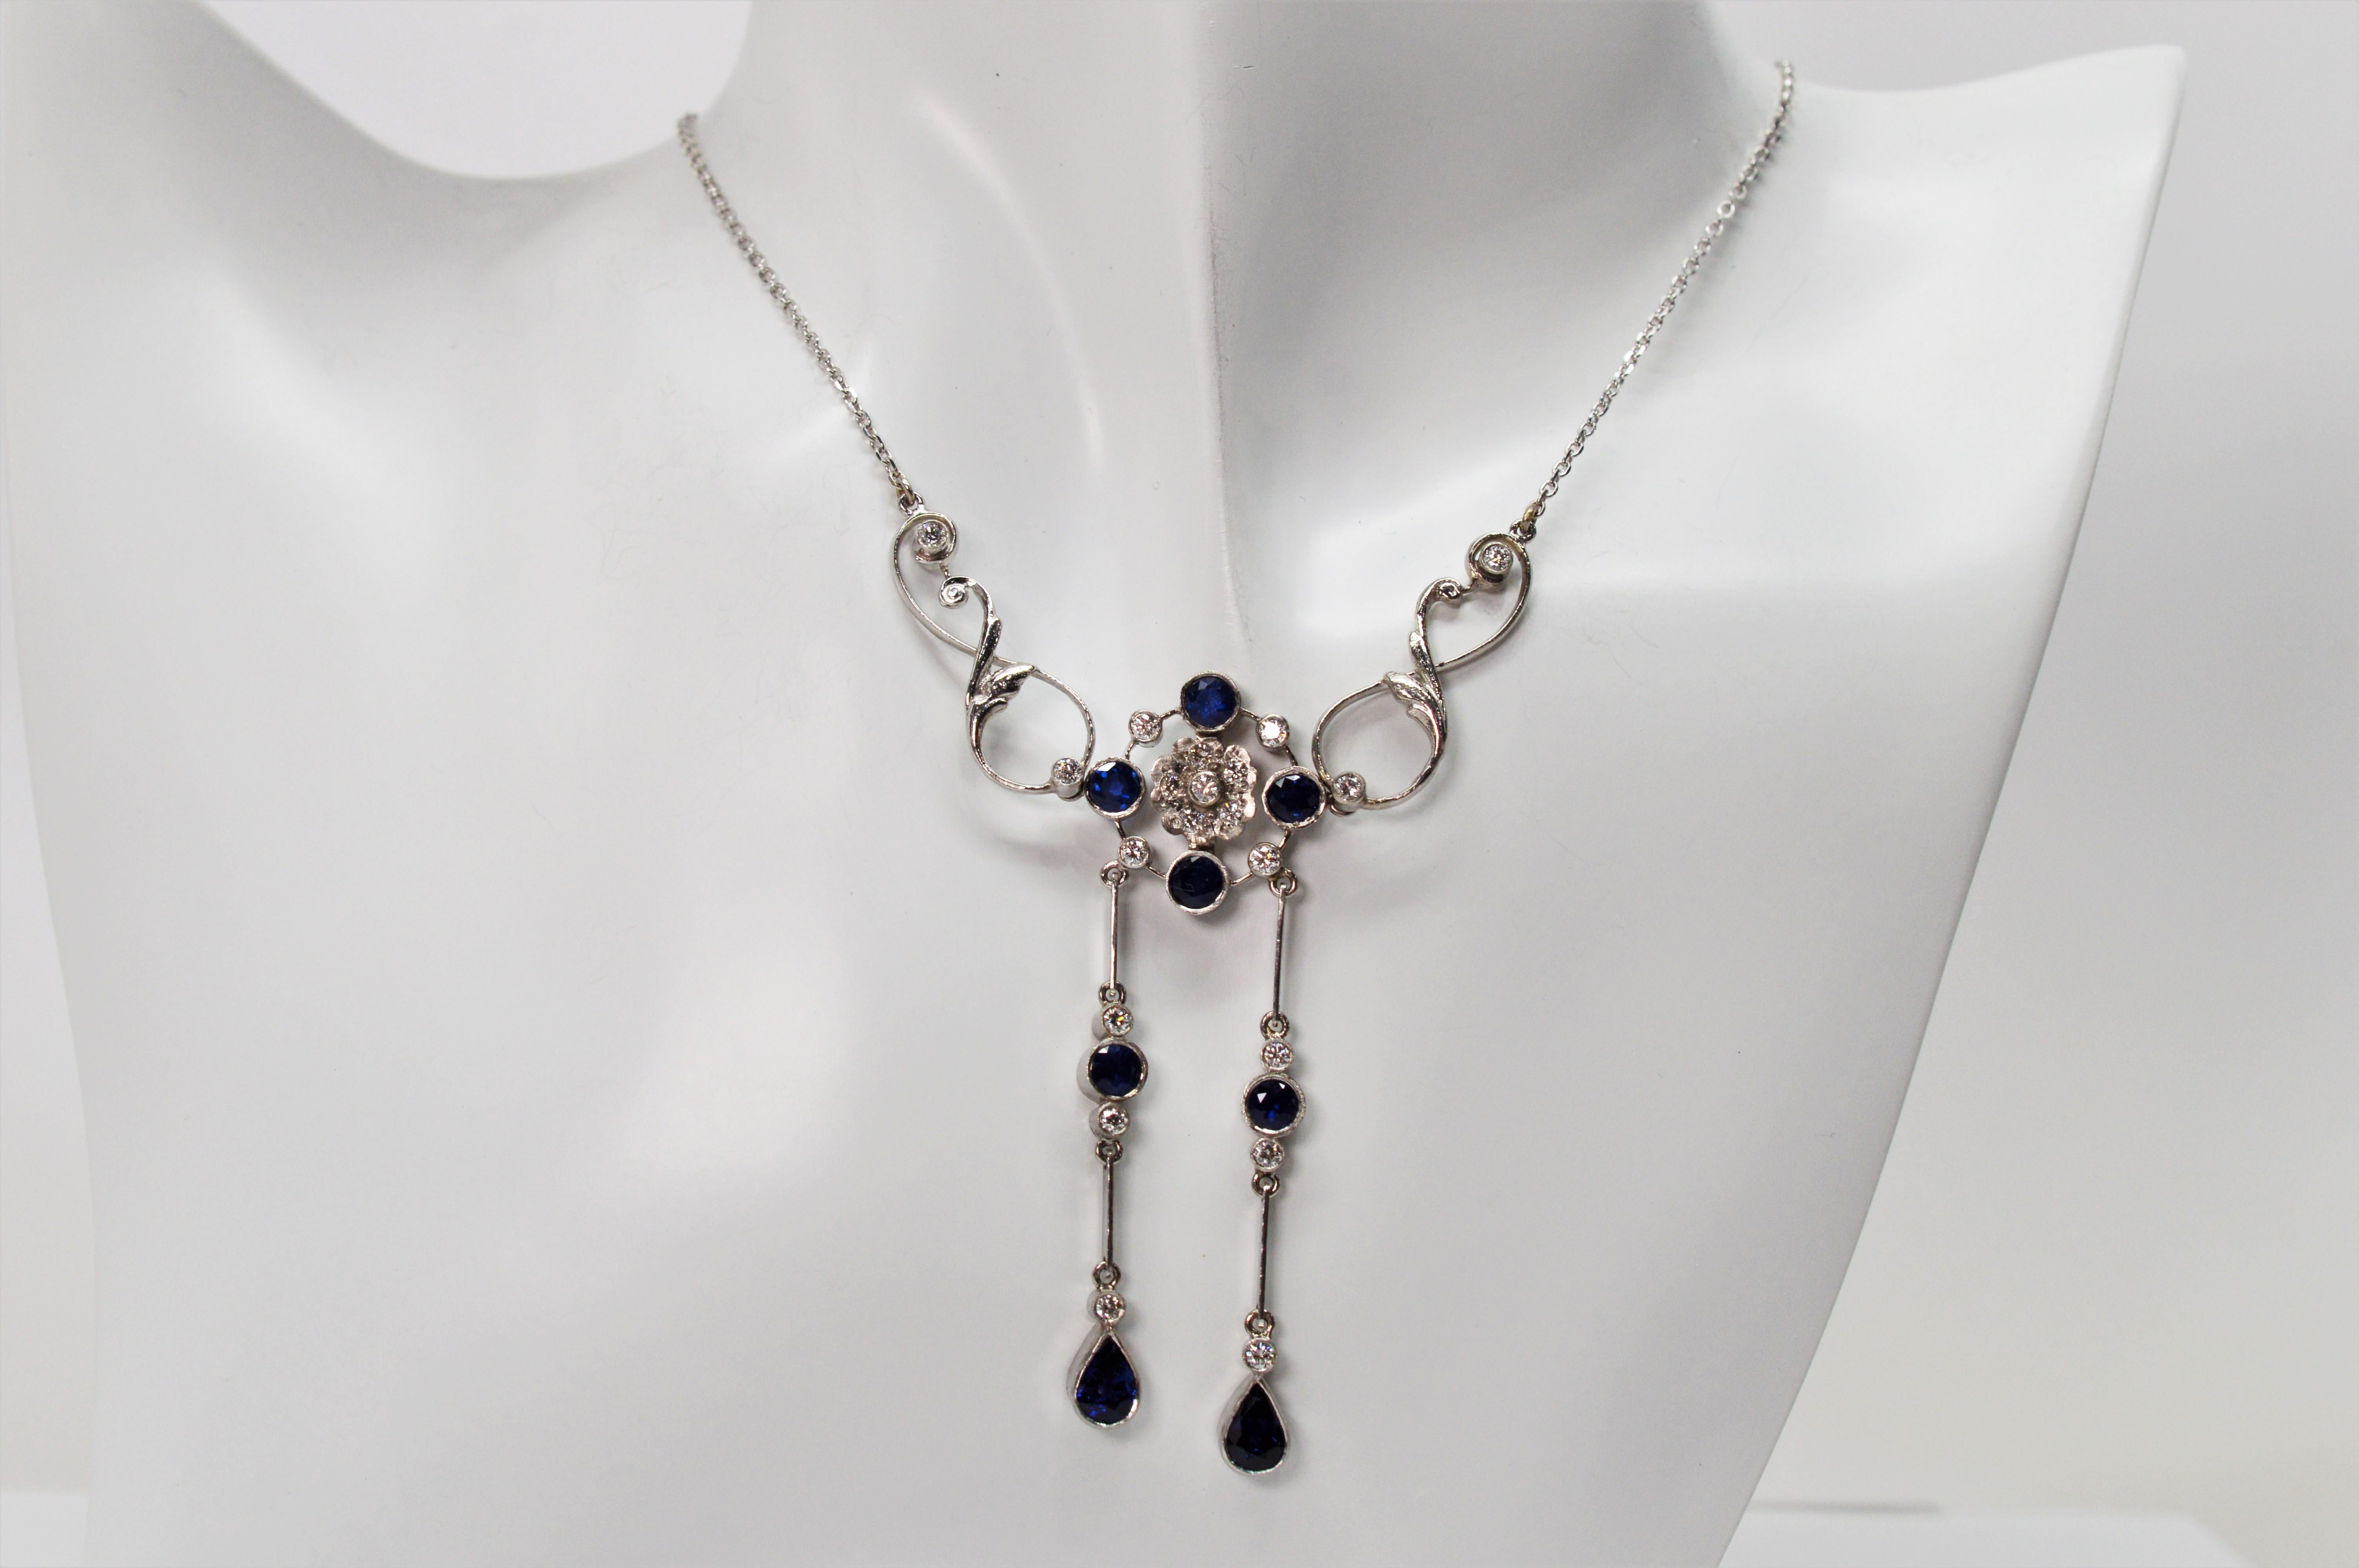 Ziehen Sie die Blicke auf sich mit dieser spektakulären Halskette aus Platin mit blauem Saphir und Diamanten als Anhänger. Perfekt als Brautschmuck oder für einen besonderen Anlass. Der florale Anhänger in der Mitte ist mit lebhaften, runden blauen